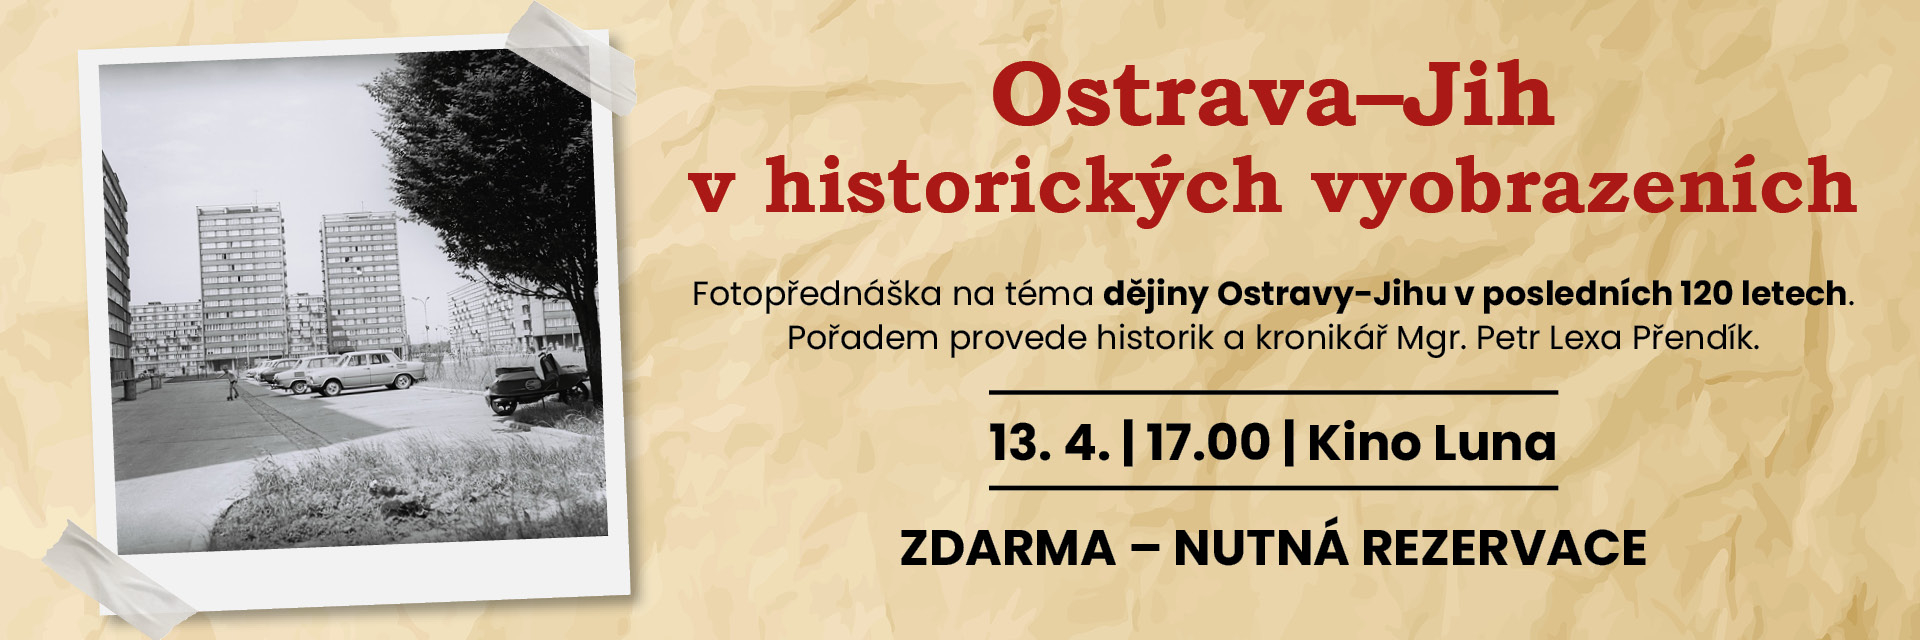 Ostrava Jih v historických vyobrazeních